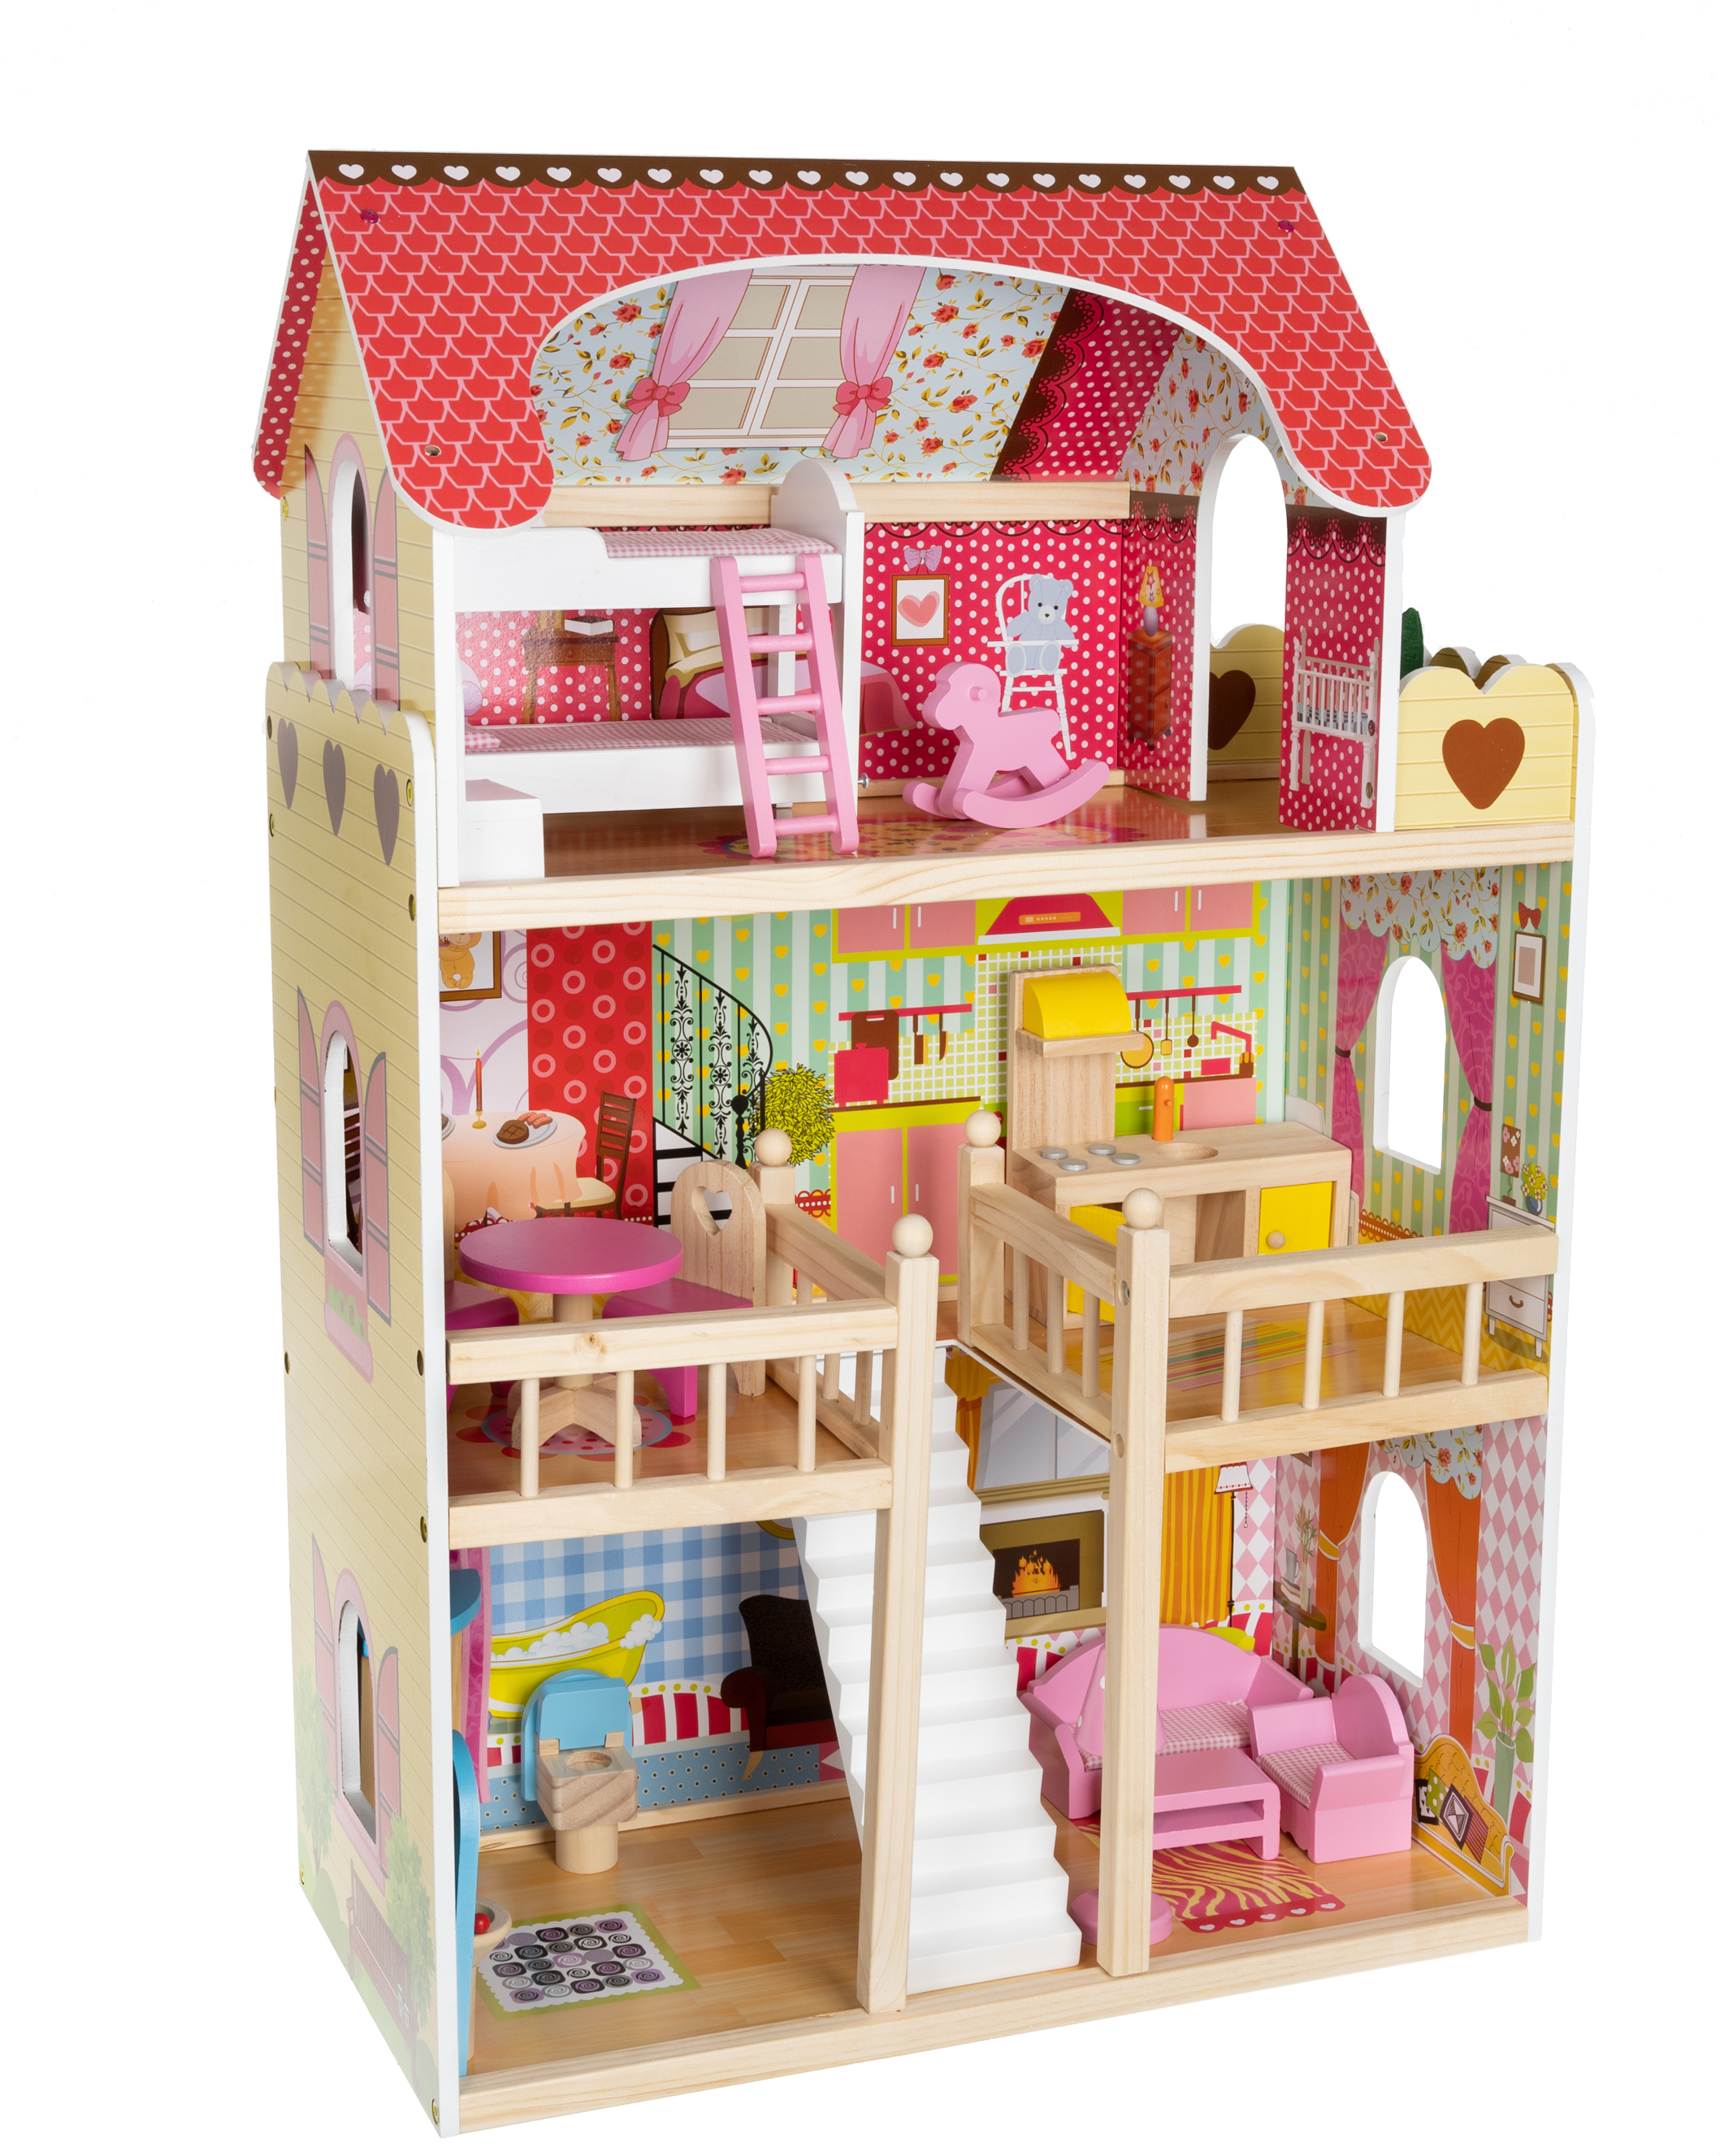 Puppenvilla Puppenhaus Puppenstube Puppenmöbel Spielzeughaus mit Möbeln Holz MDF 